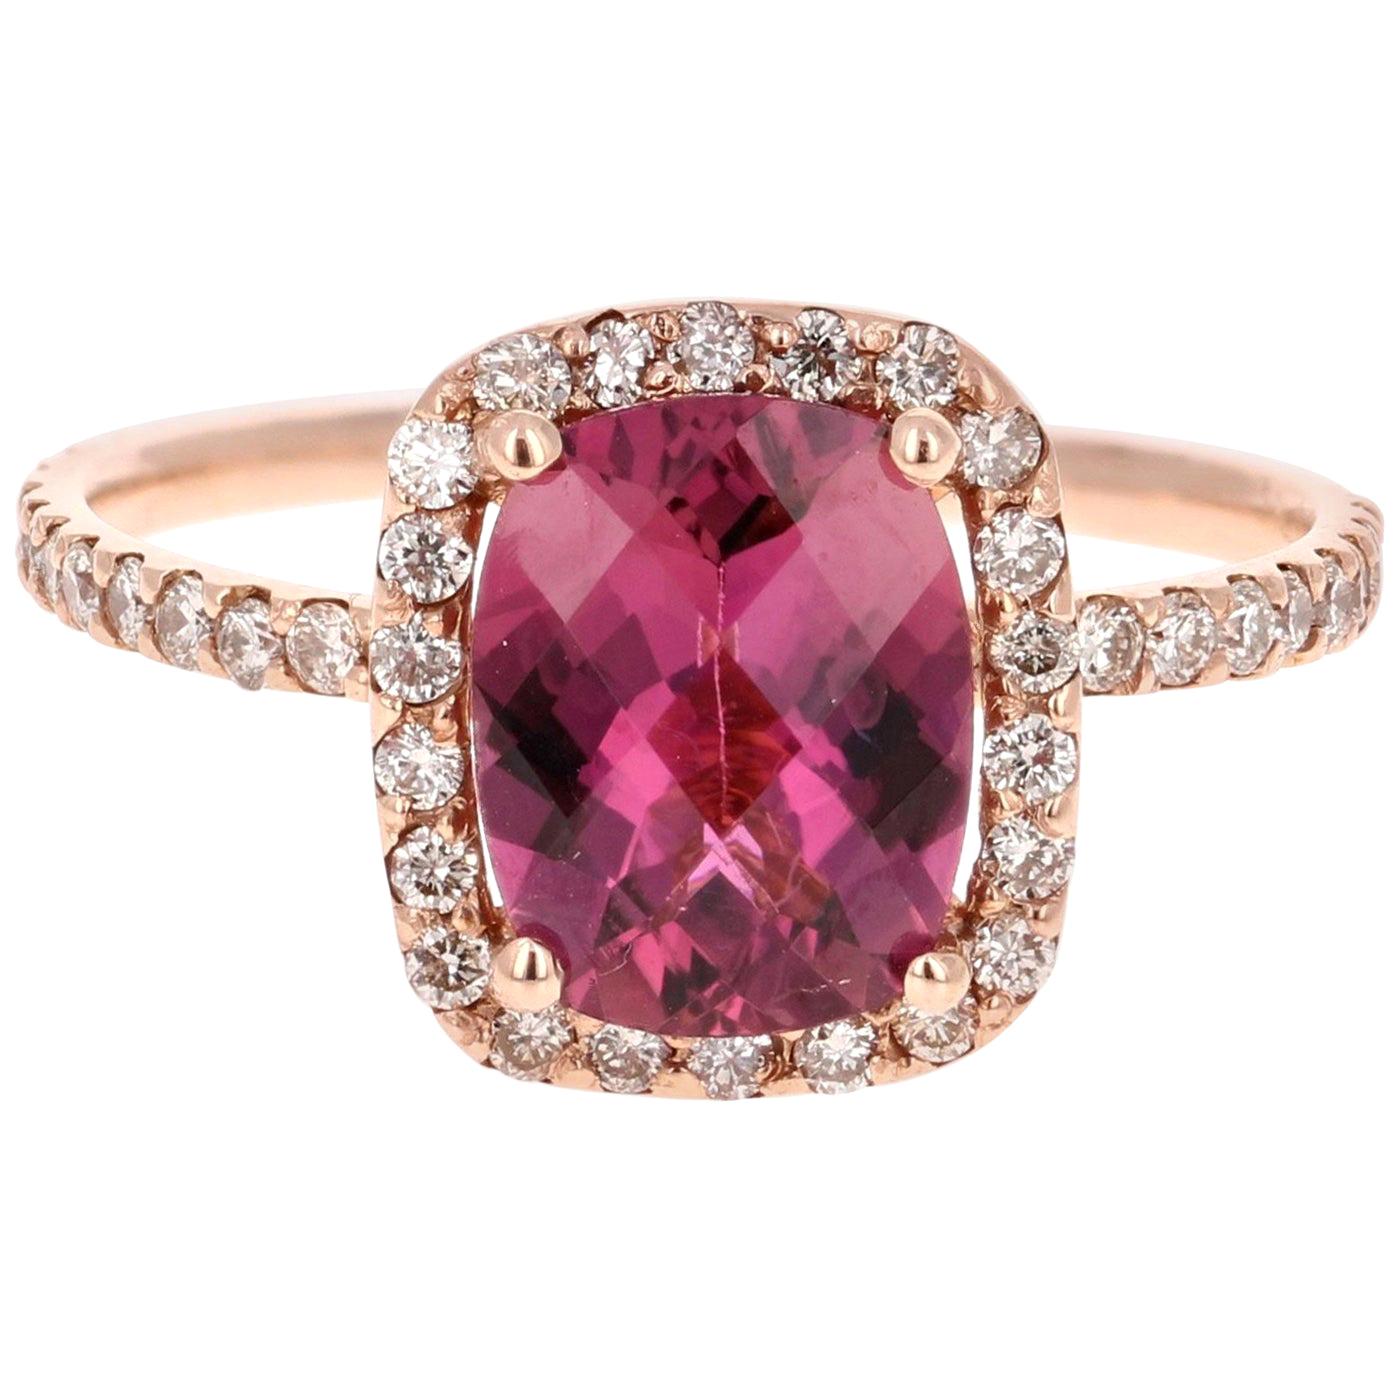 2.26 Carat Pink Tourmaline Diamond 14 Karat Rose Gold Ring